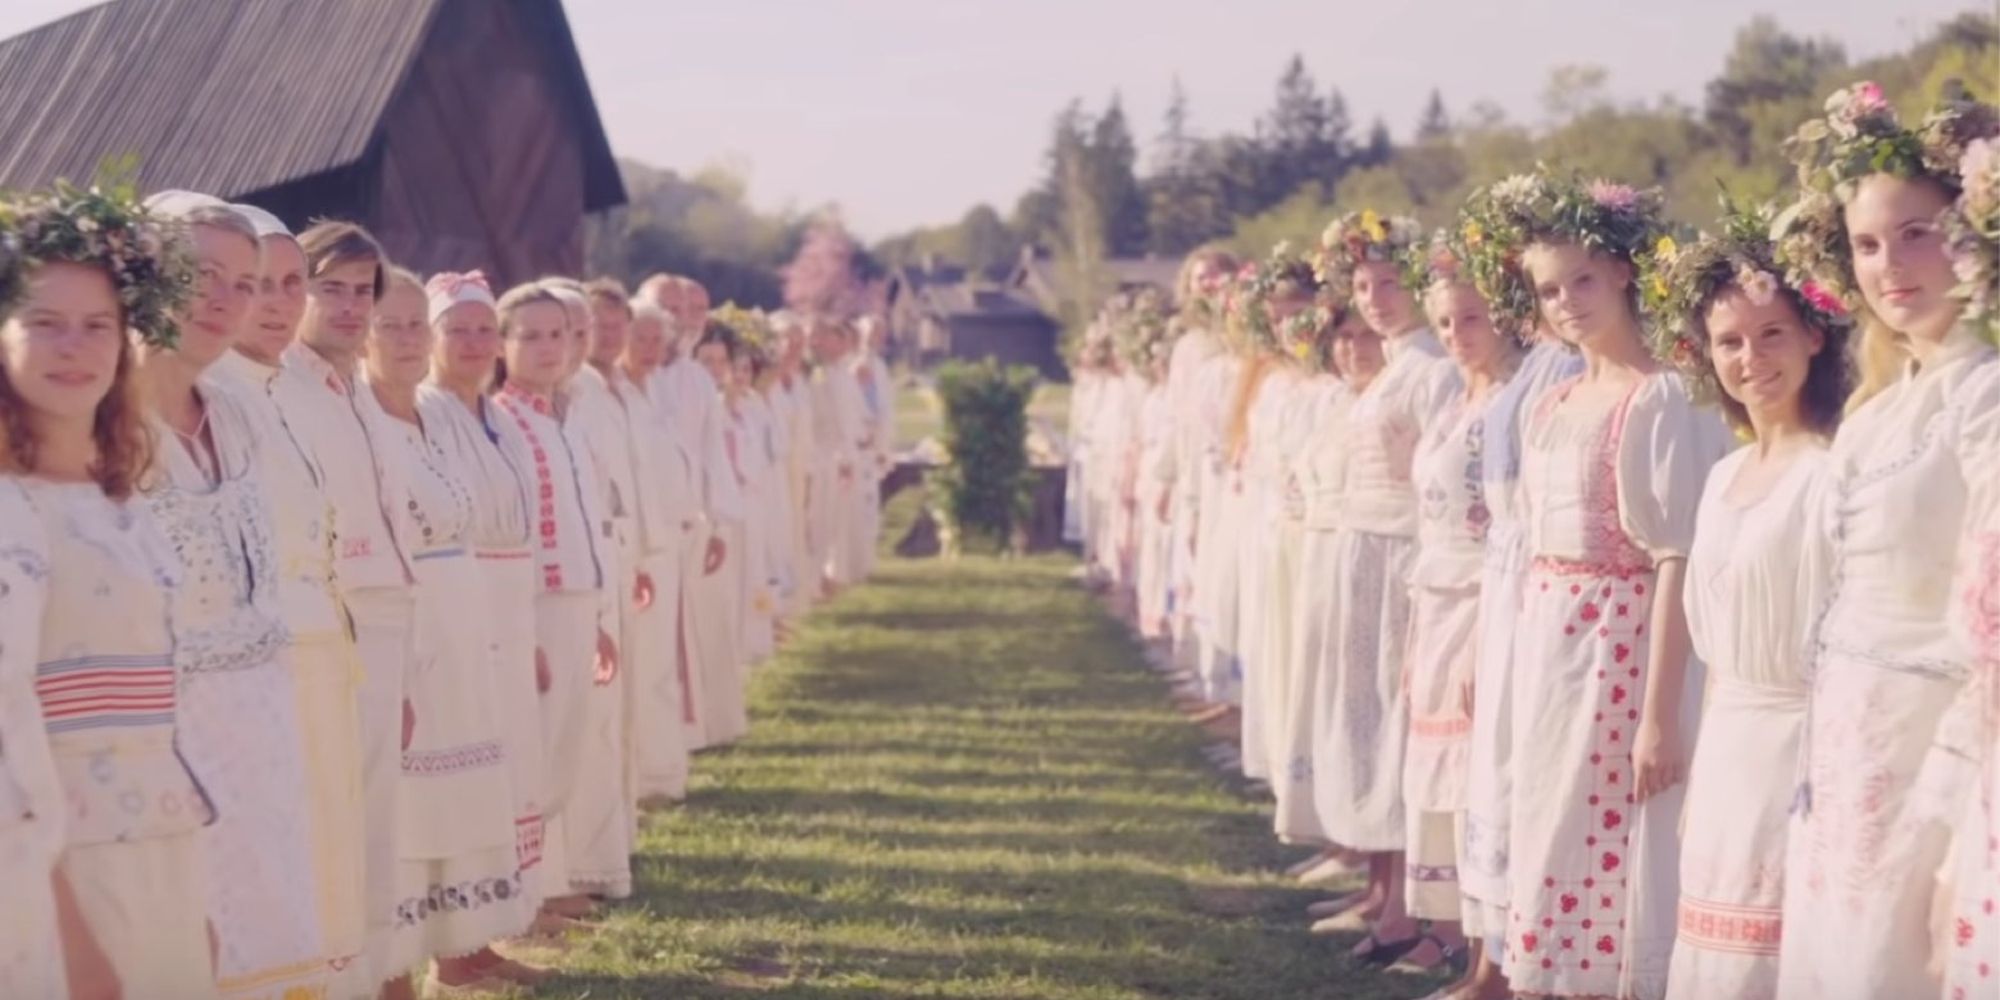 Culto sueco no solstício de verão